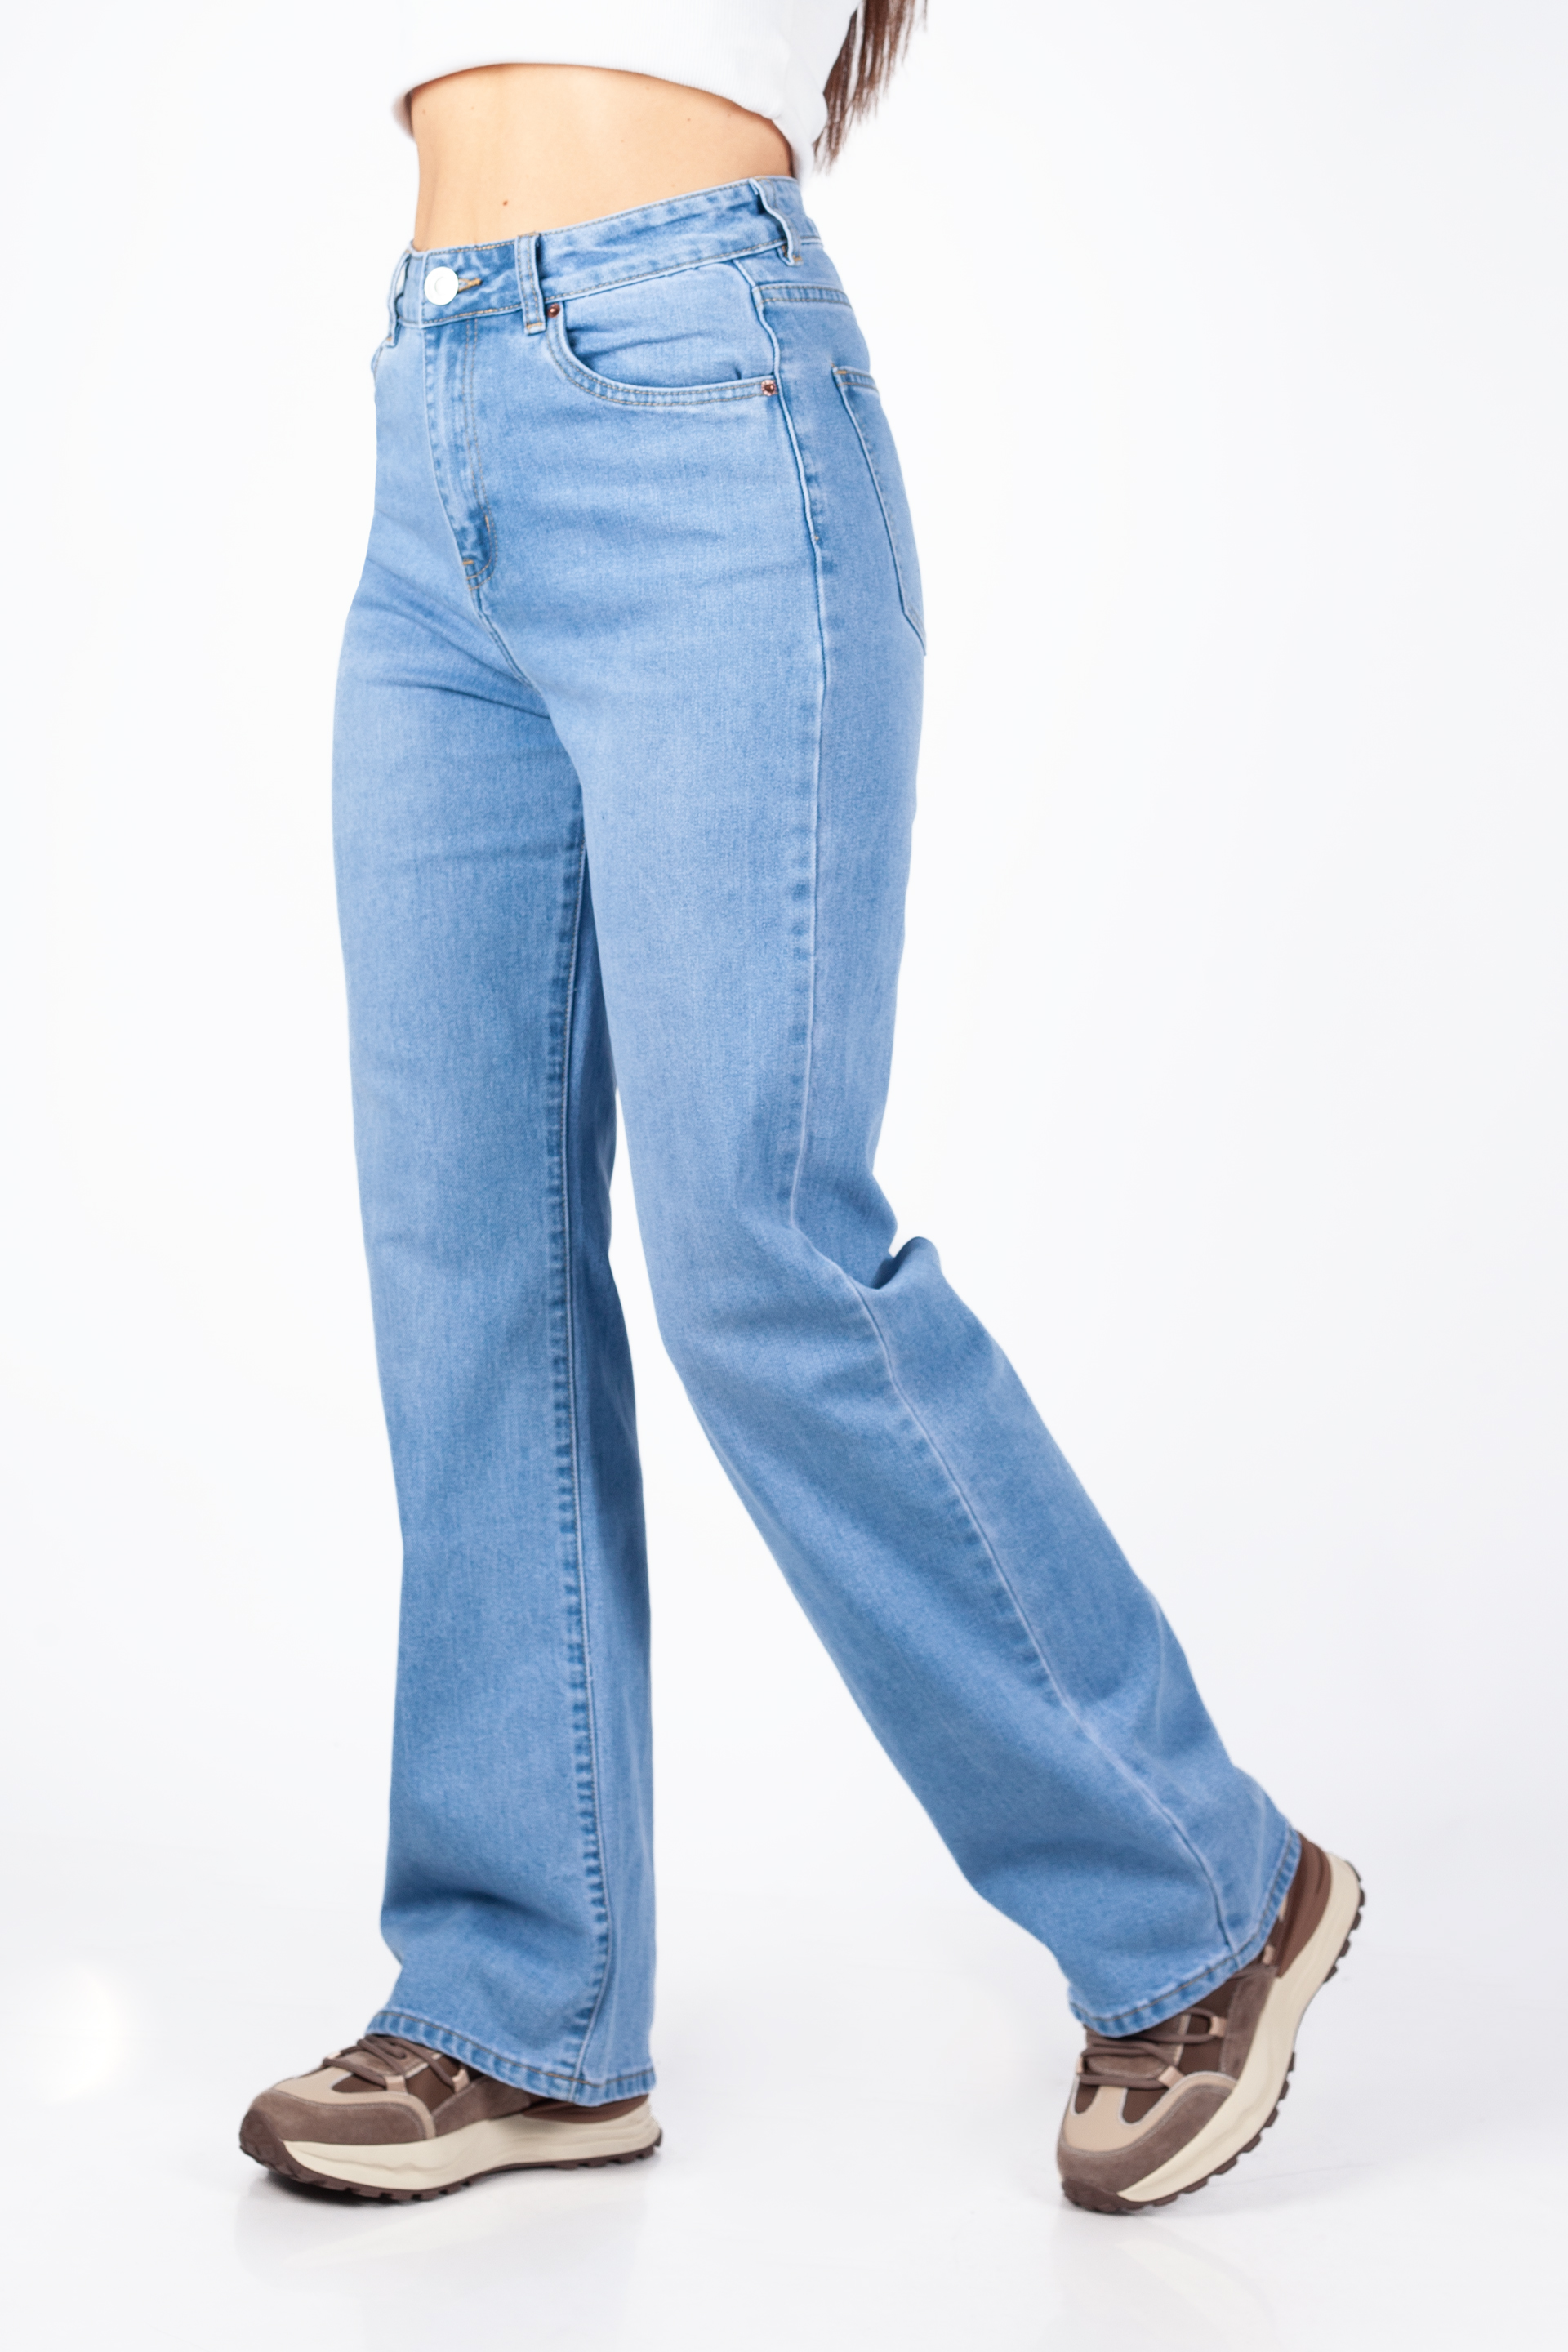 Jeans VS MISS VS8176